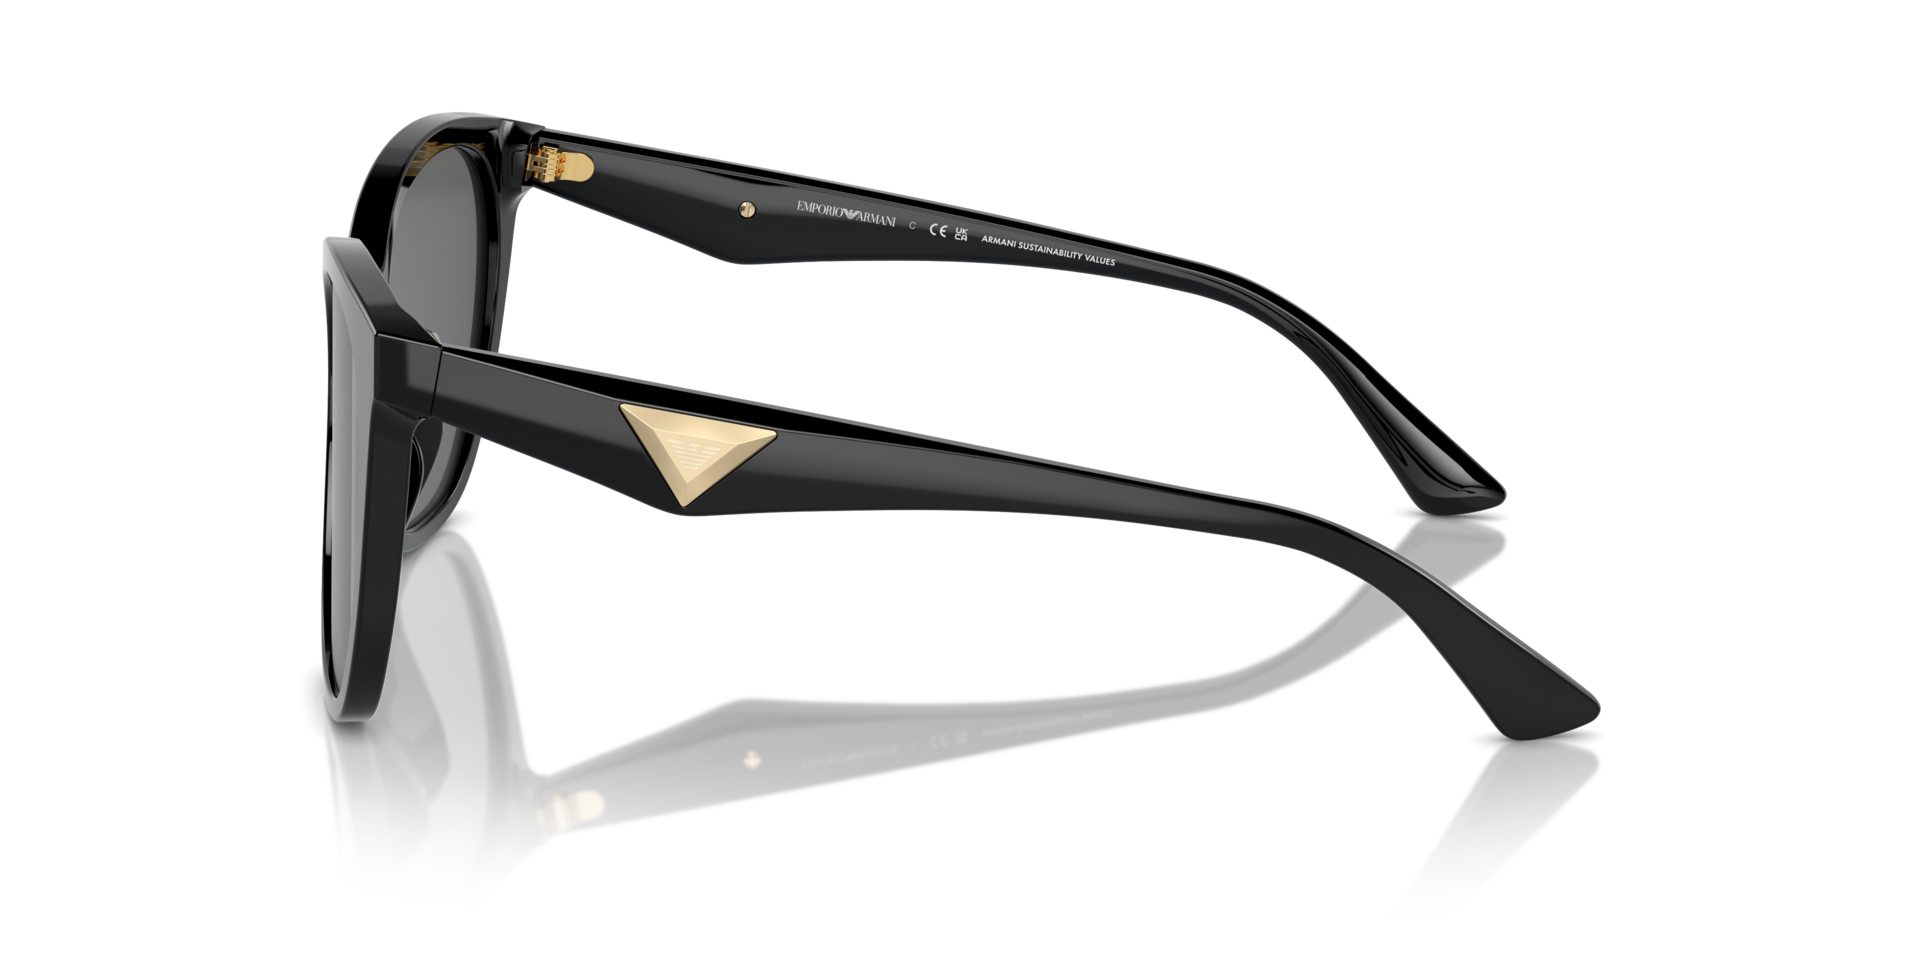 Das Bild zeigt die Sonnenbrille EA4222 501787 von der Marke Emporio Armani in schwarz.